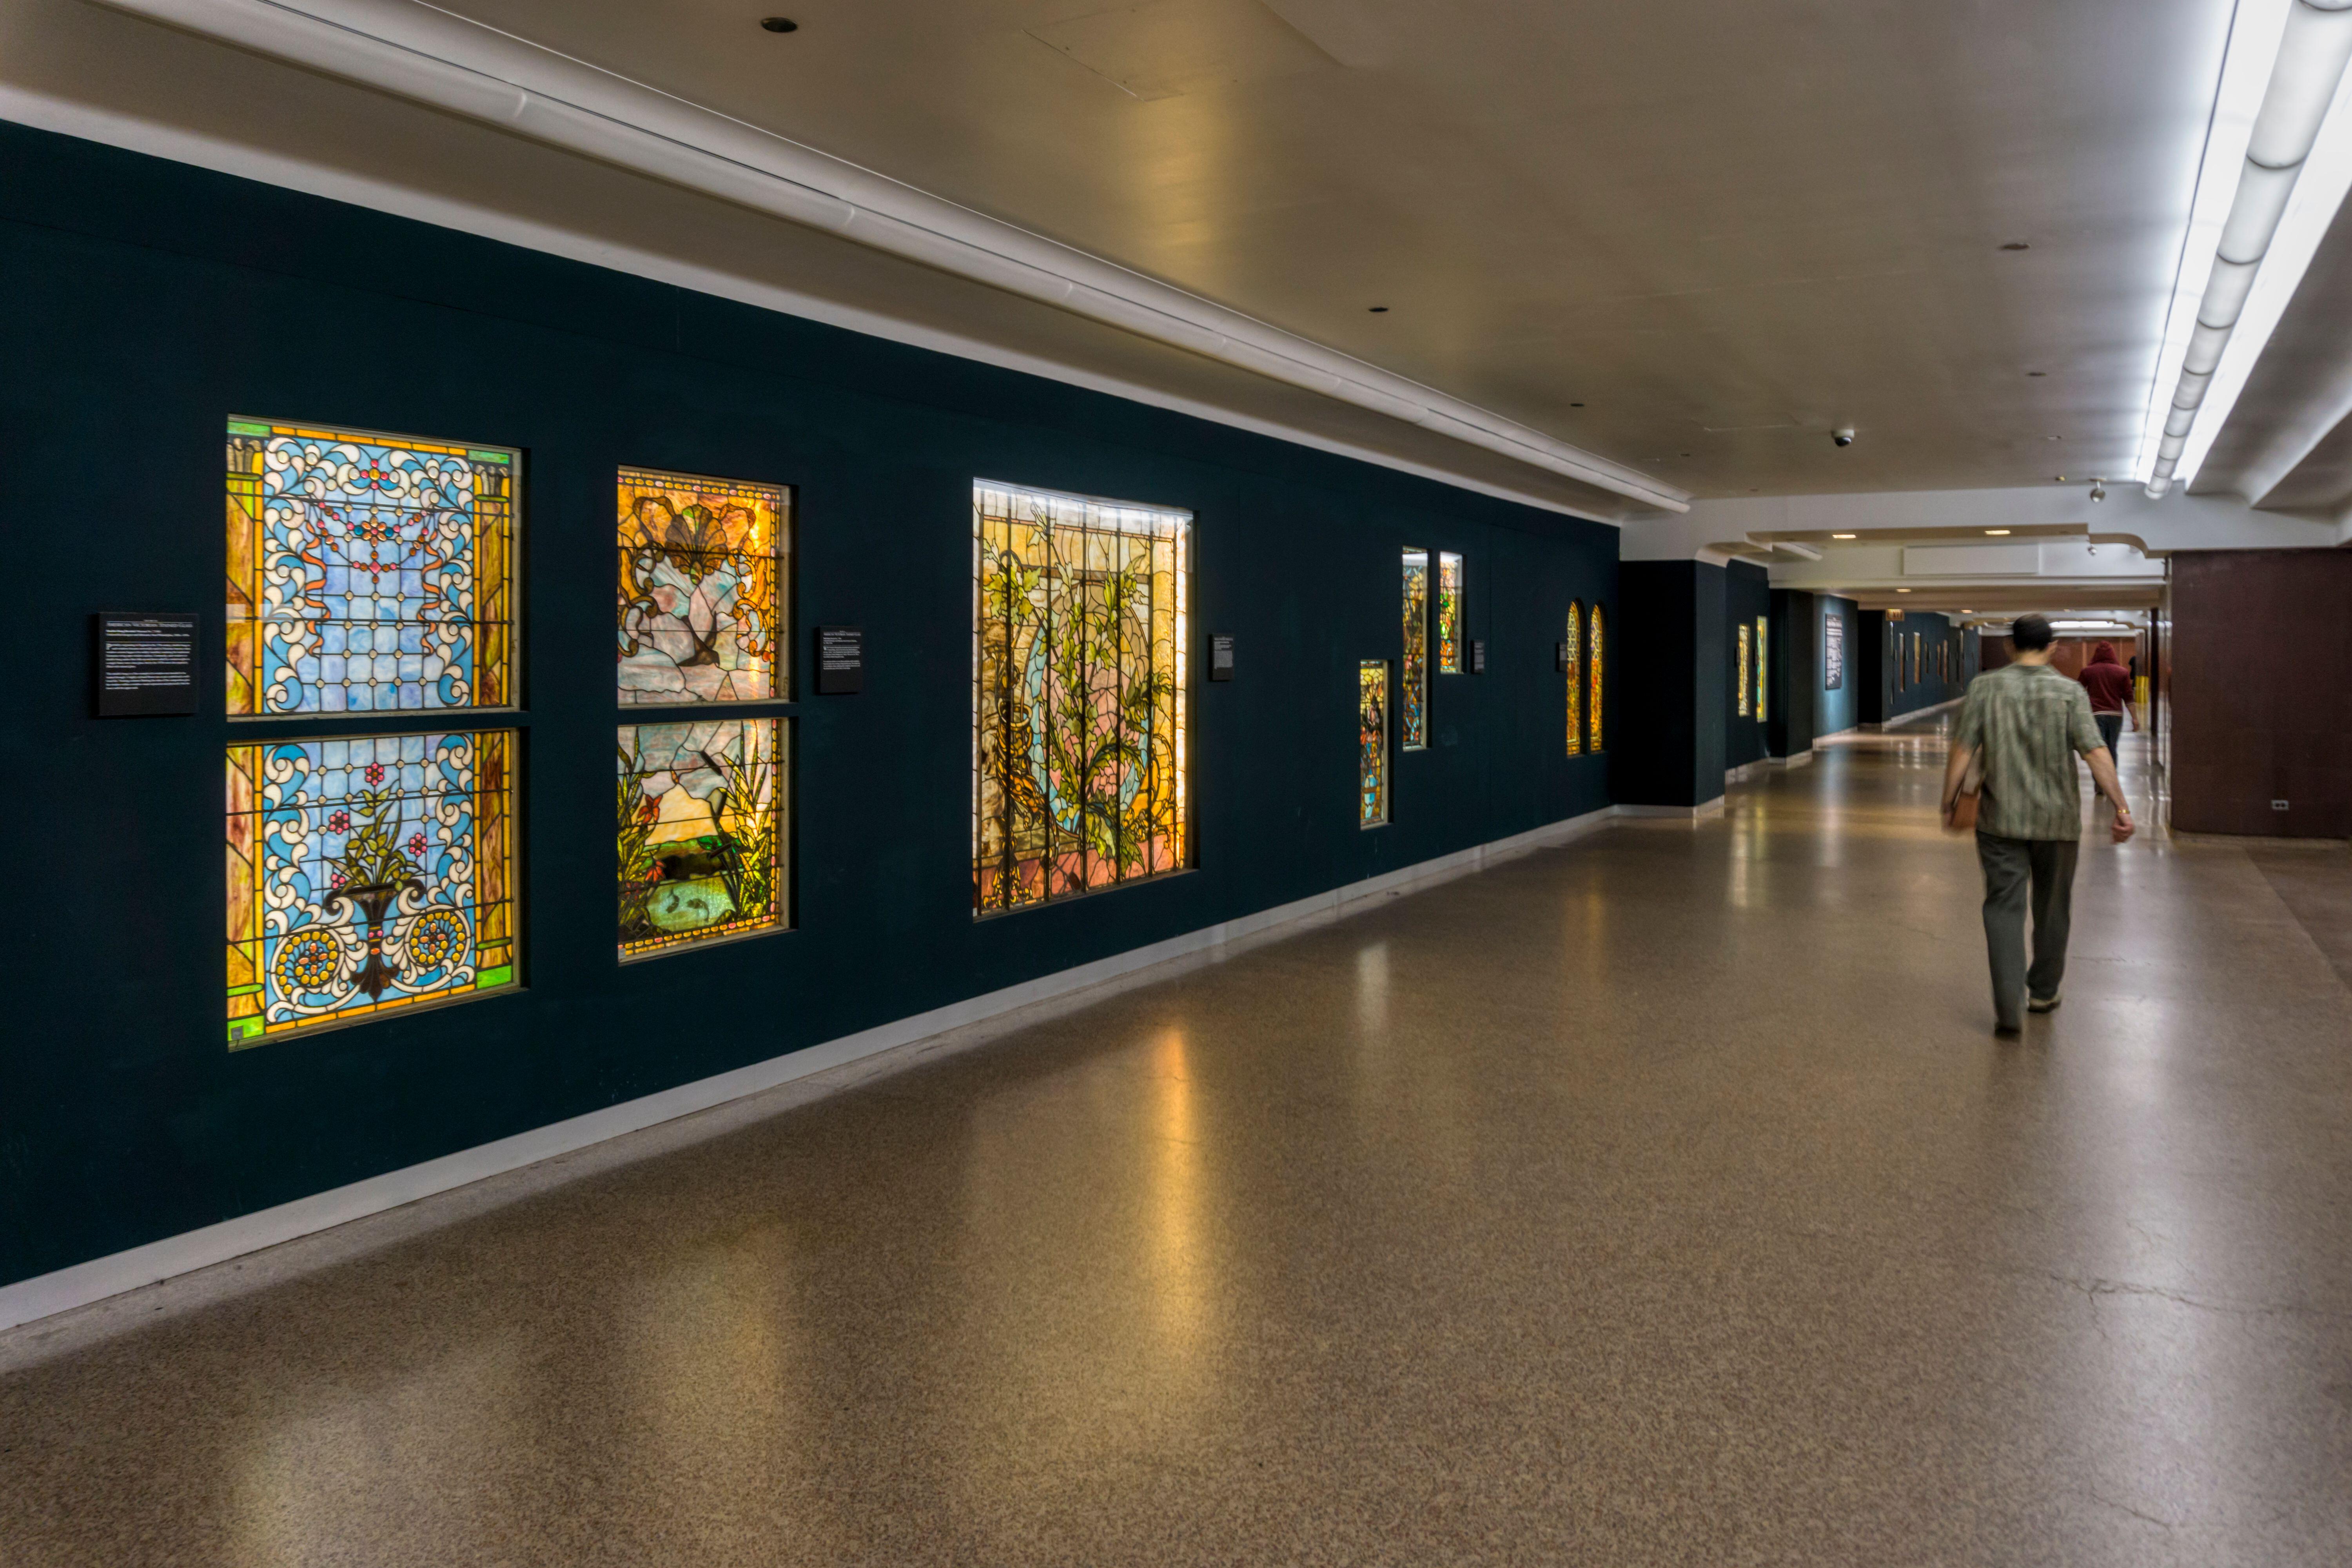 Buntglasfenster säumen die Wände neben Restaurants, Salons und Geschäften